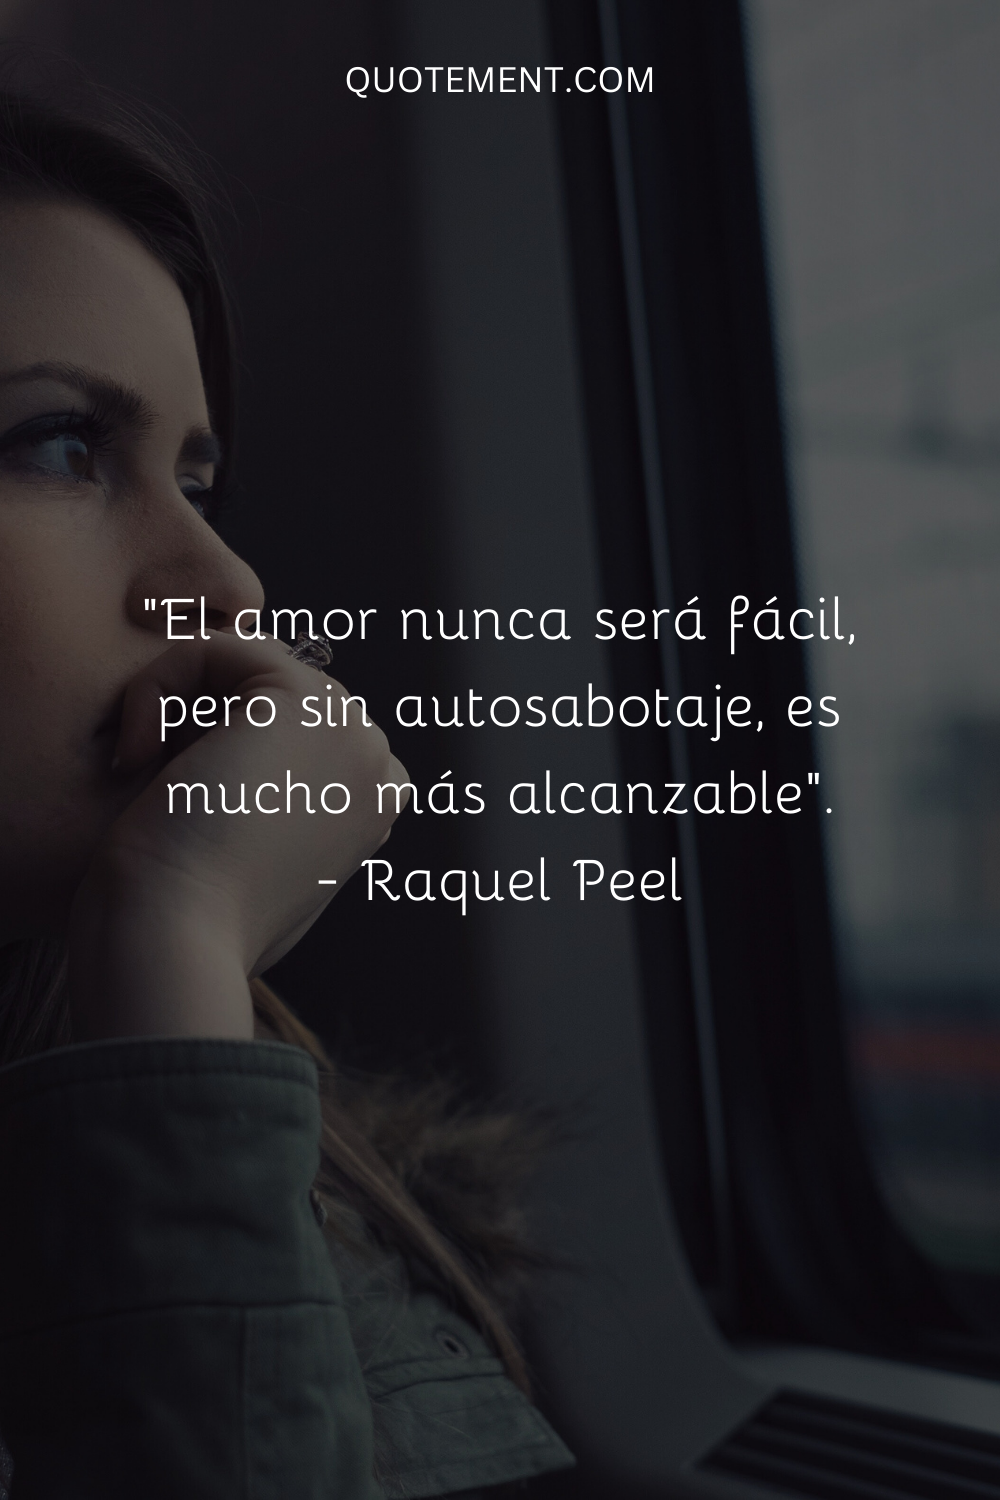 "El amor nunca será fácil, pero sin autosabotaje es mucho más alcanzable". - Raquel Peel